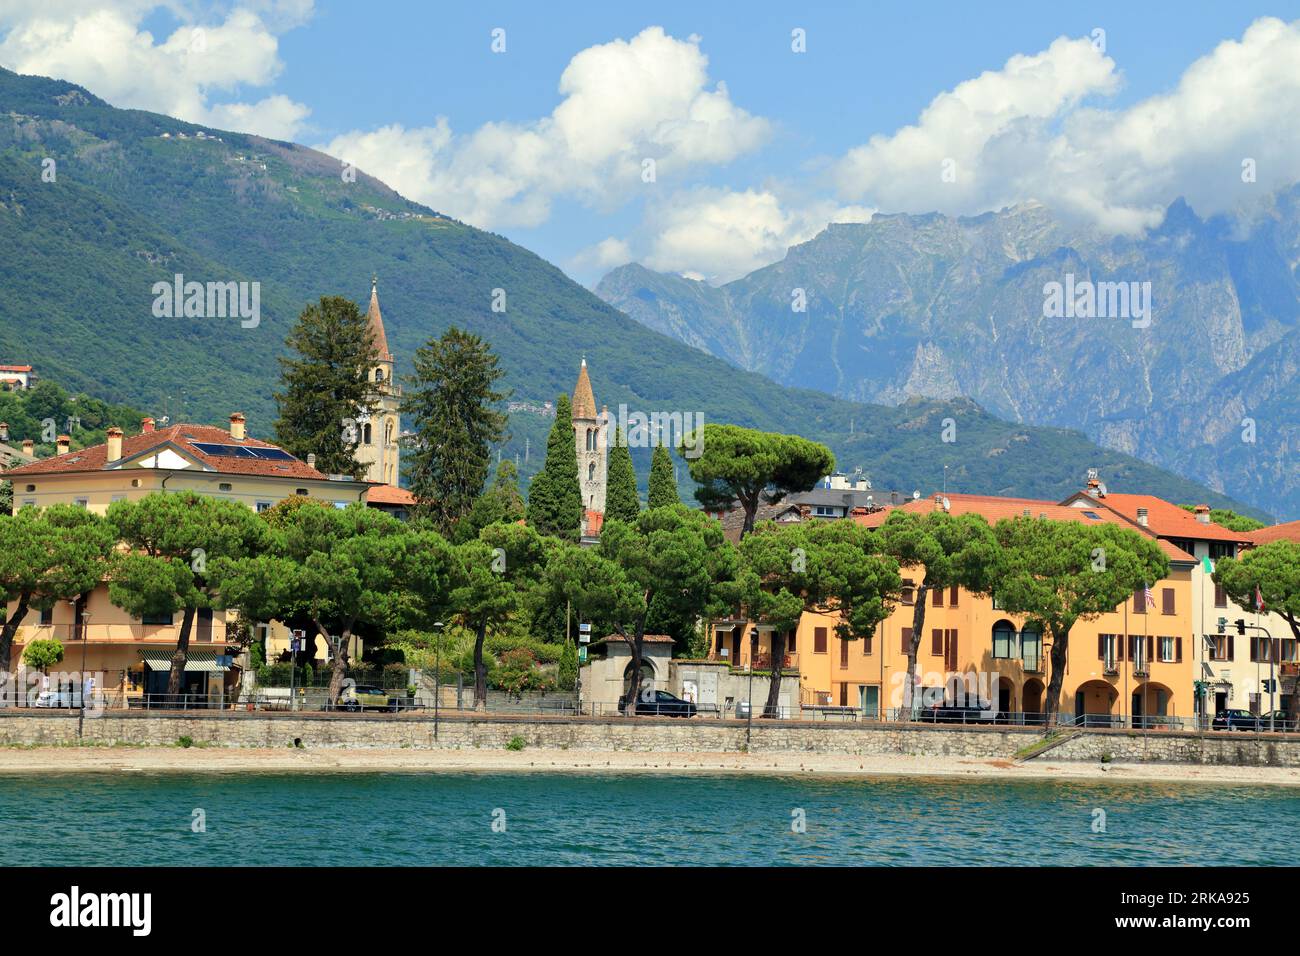 Domaso town, Lake Como (Lago di Como), Italy Stock Photo